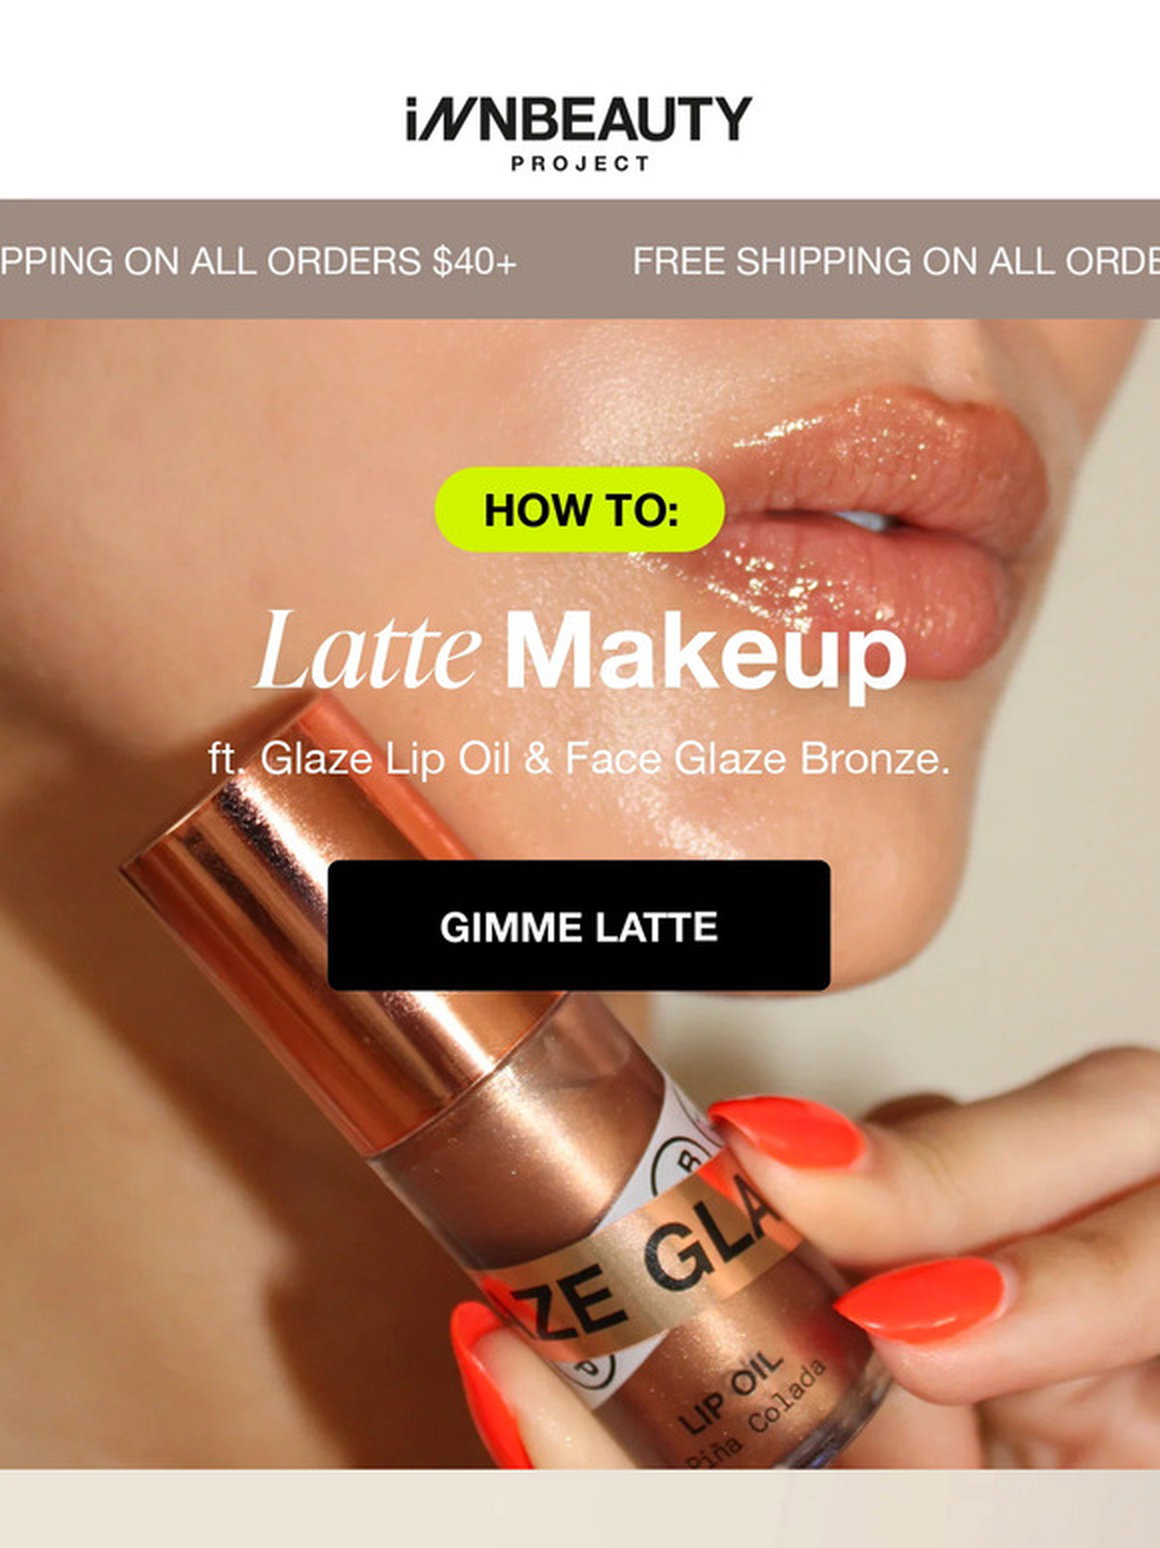 Latte Makeup Kit - 2 Lip Glazes, Face Glaze, & Face Glaze Bronze